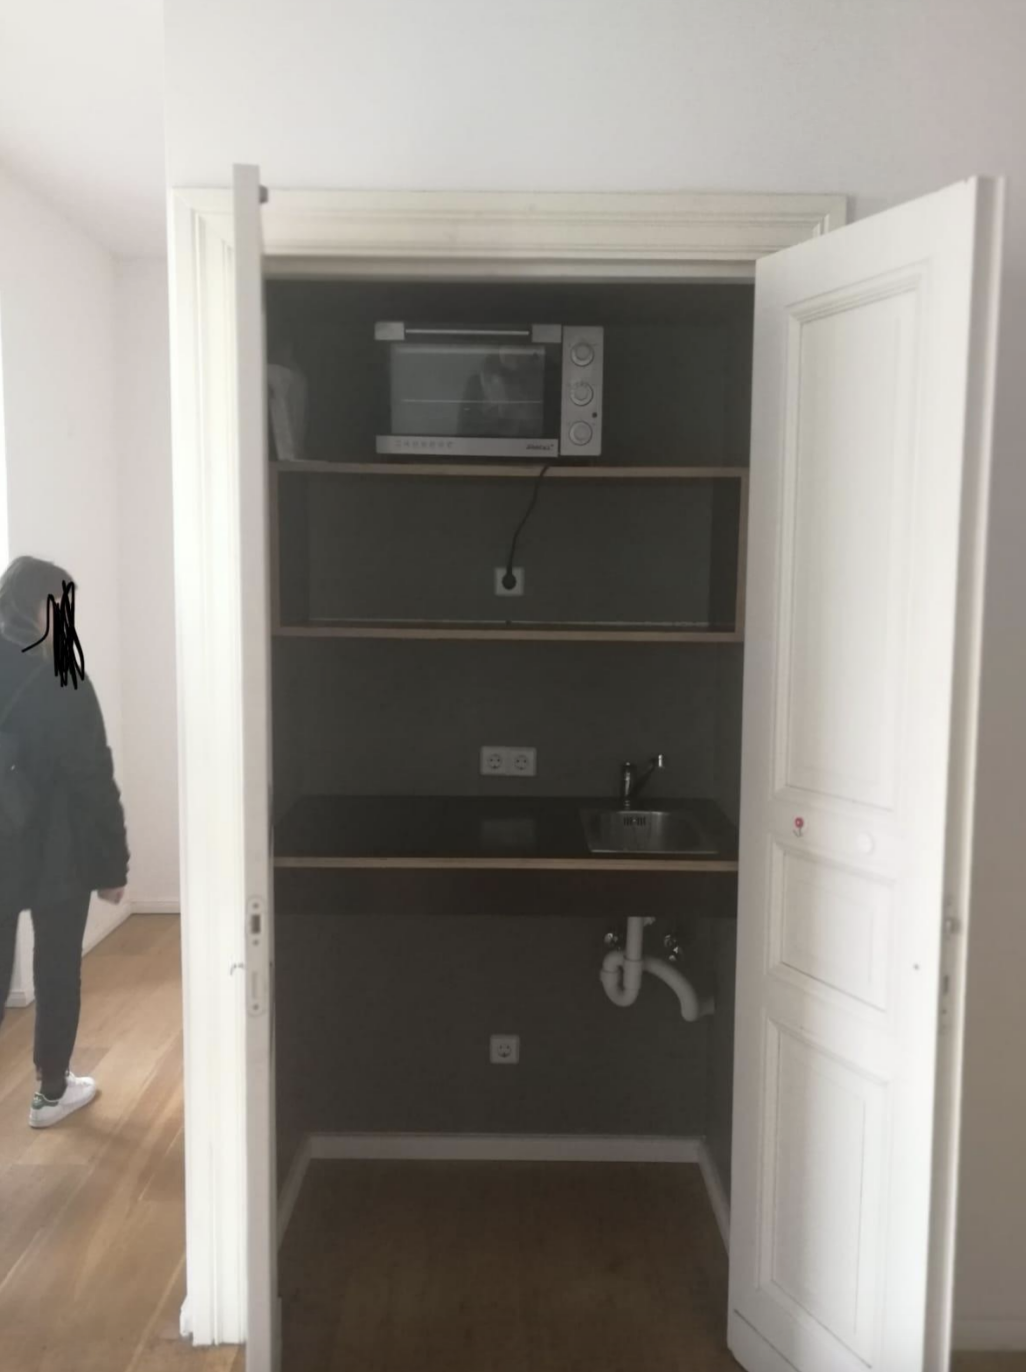 A kitchen in a closet